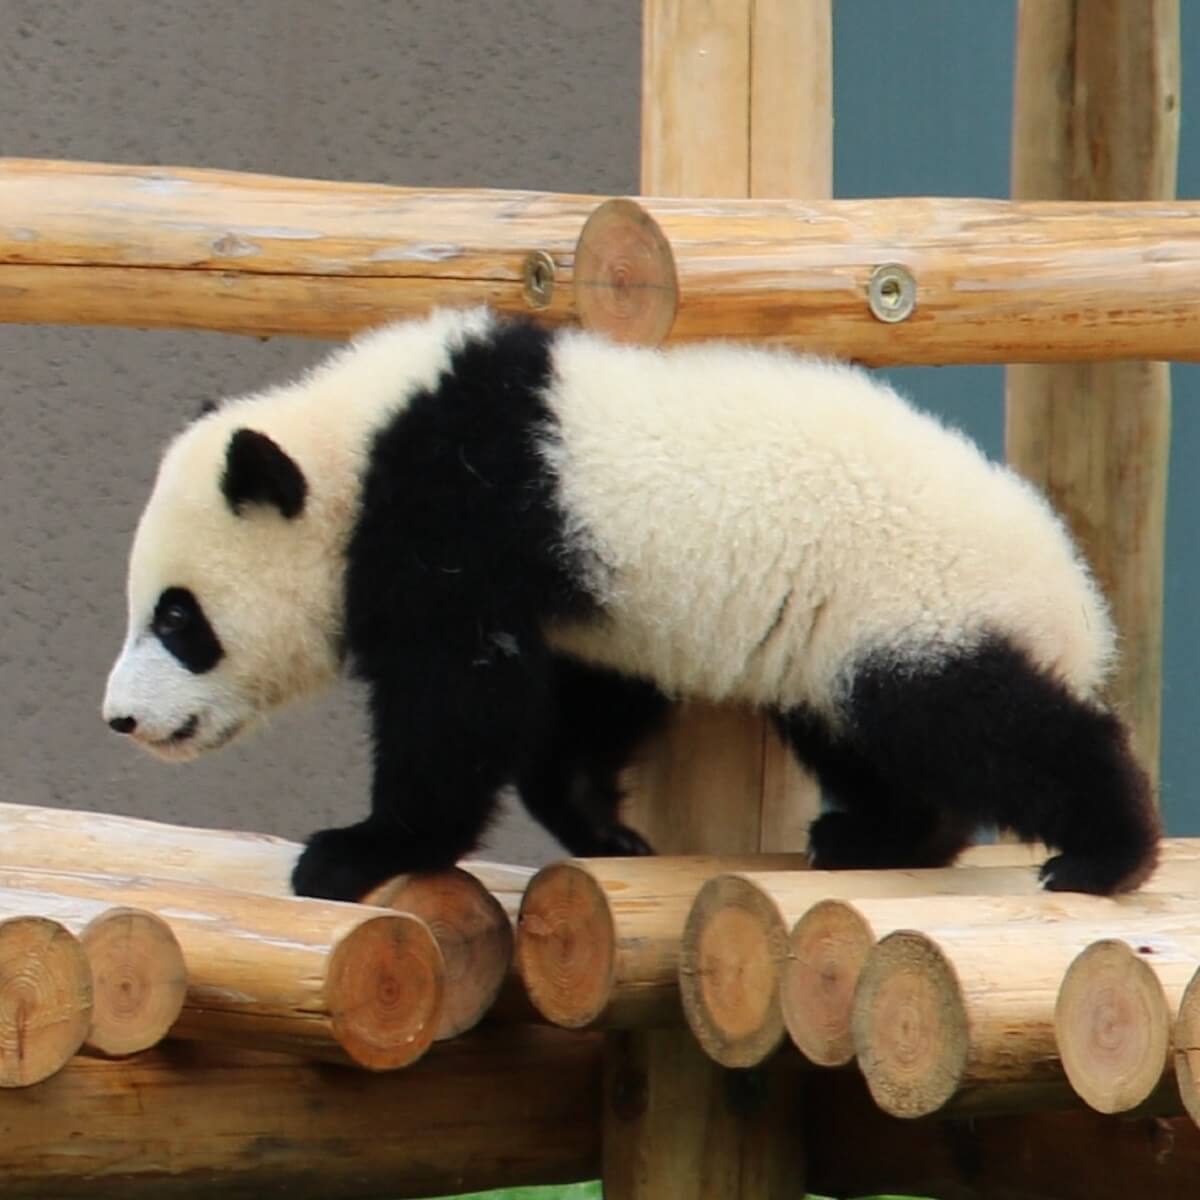 ジャイアントパンダ繁殖がむずかしい理由がわかる記事 Zoo Zoo Diary